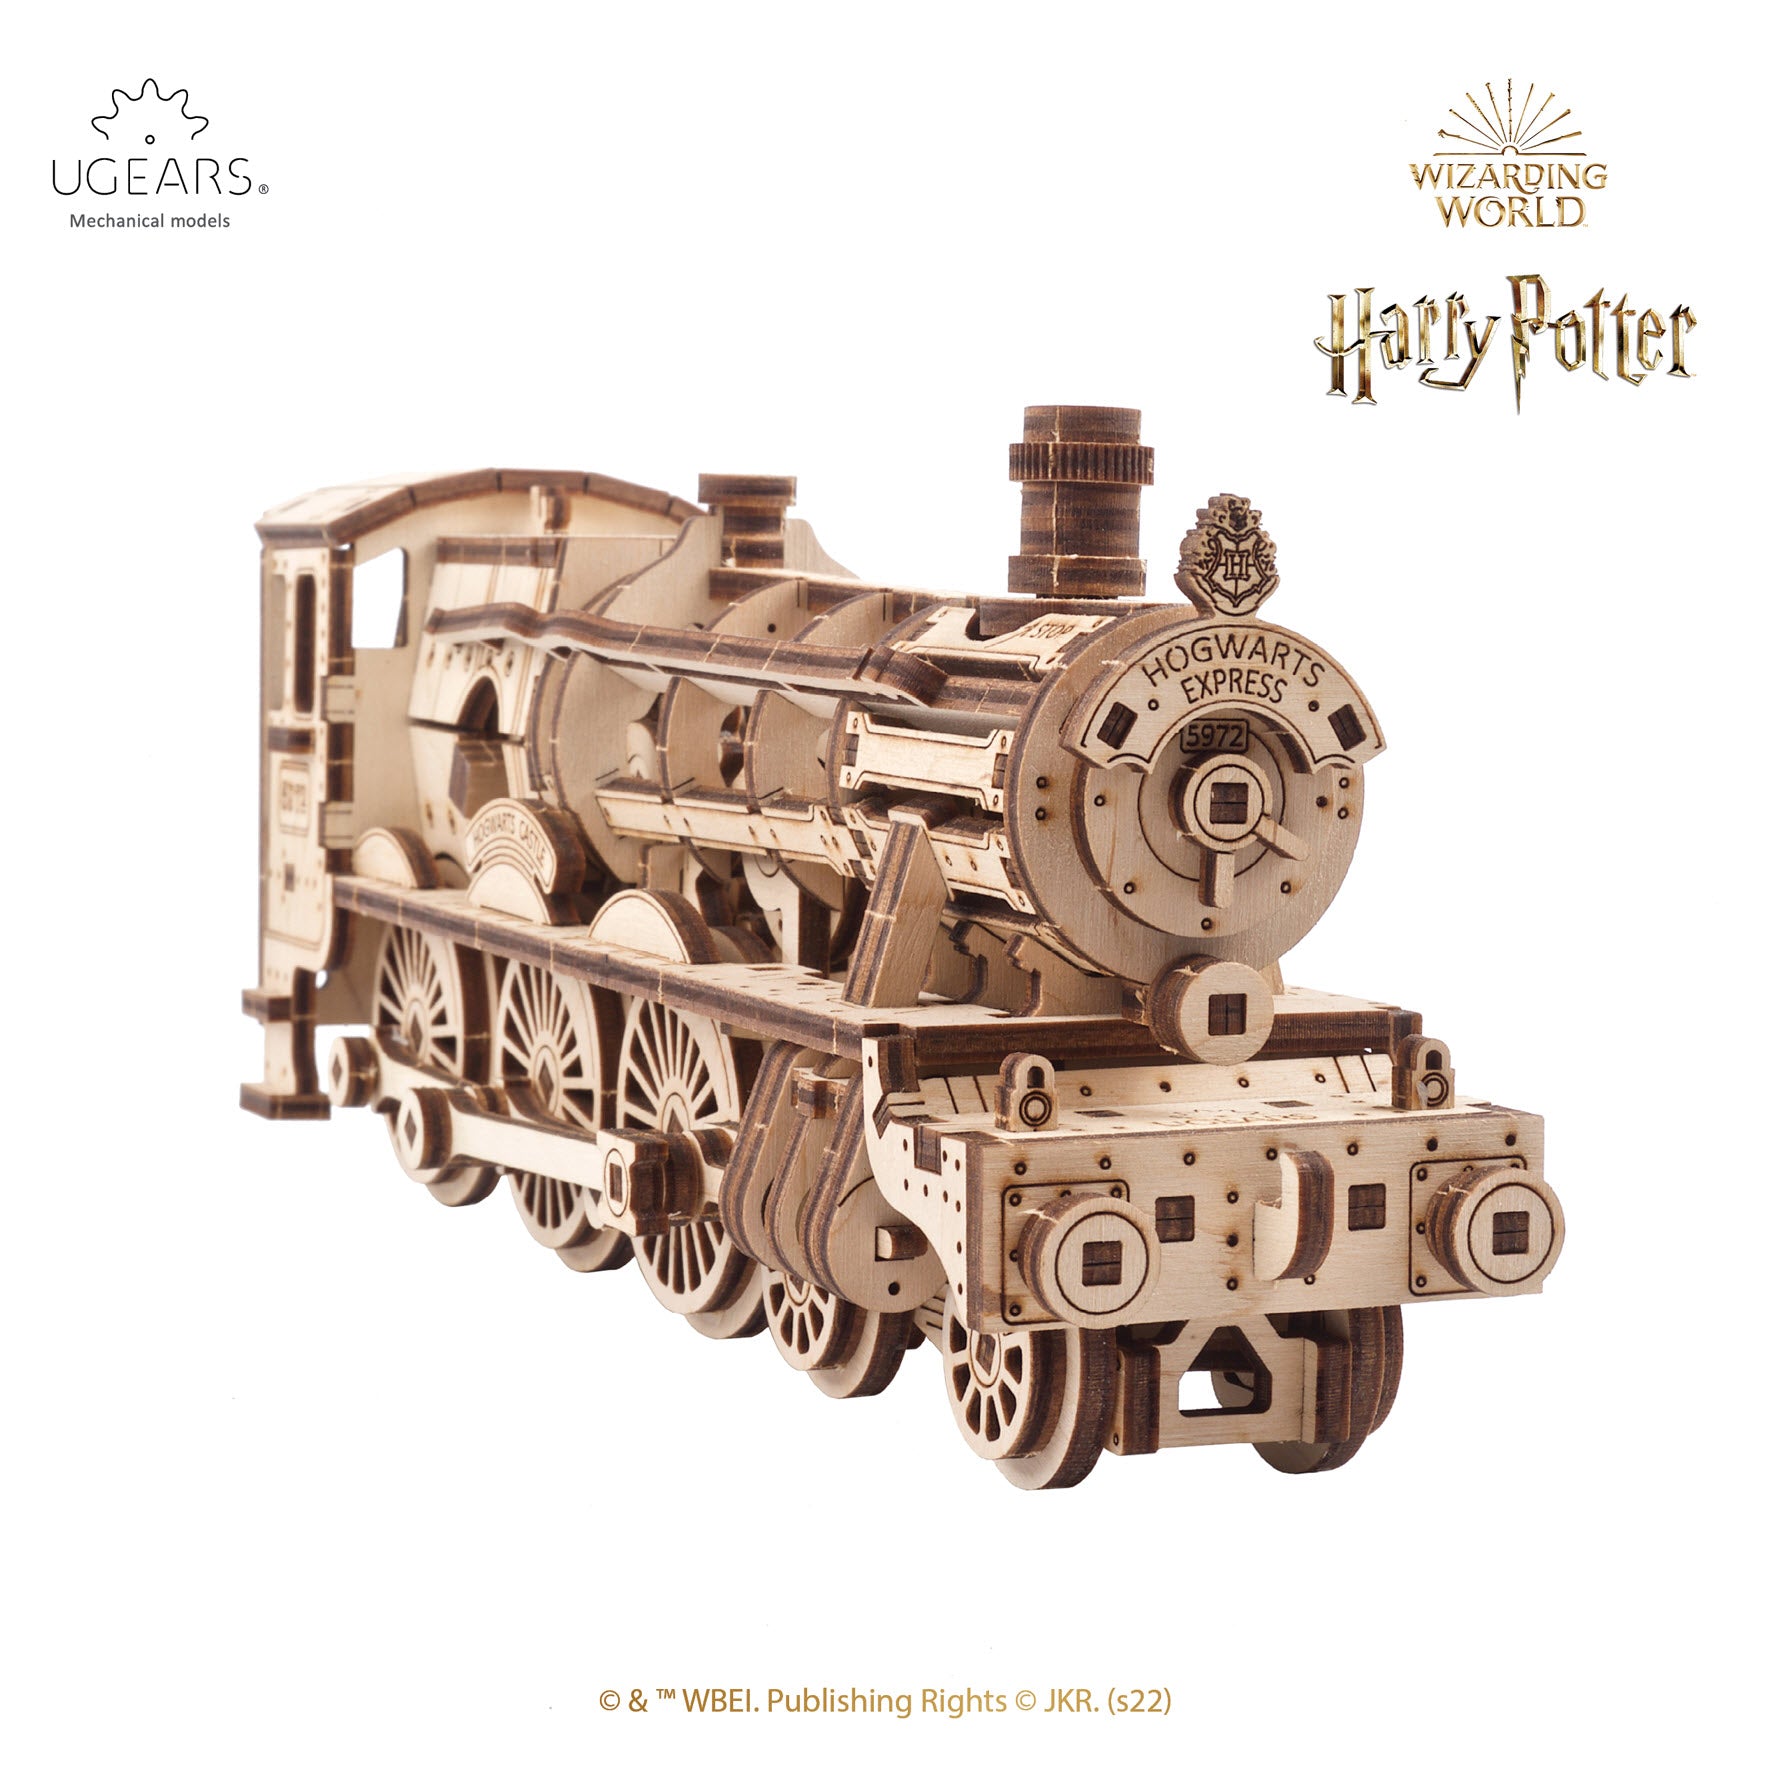 Harry Potter™ Hogwarts™ Puzzle